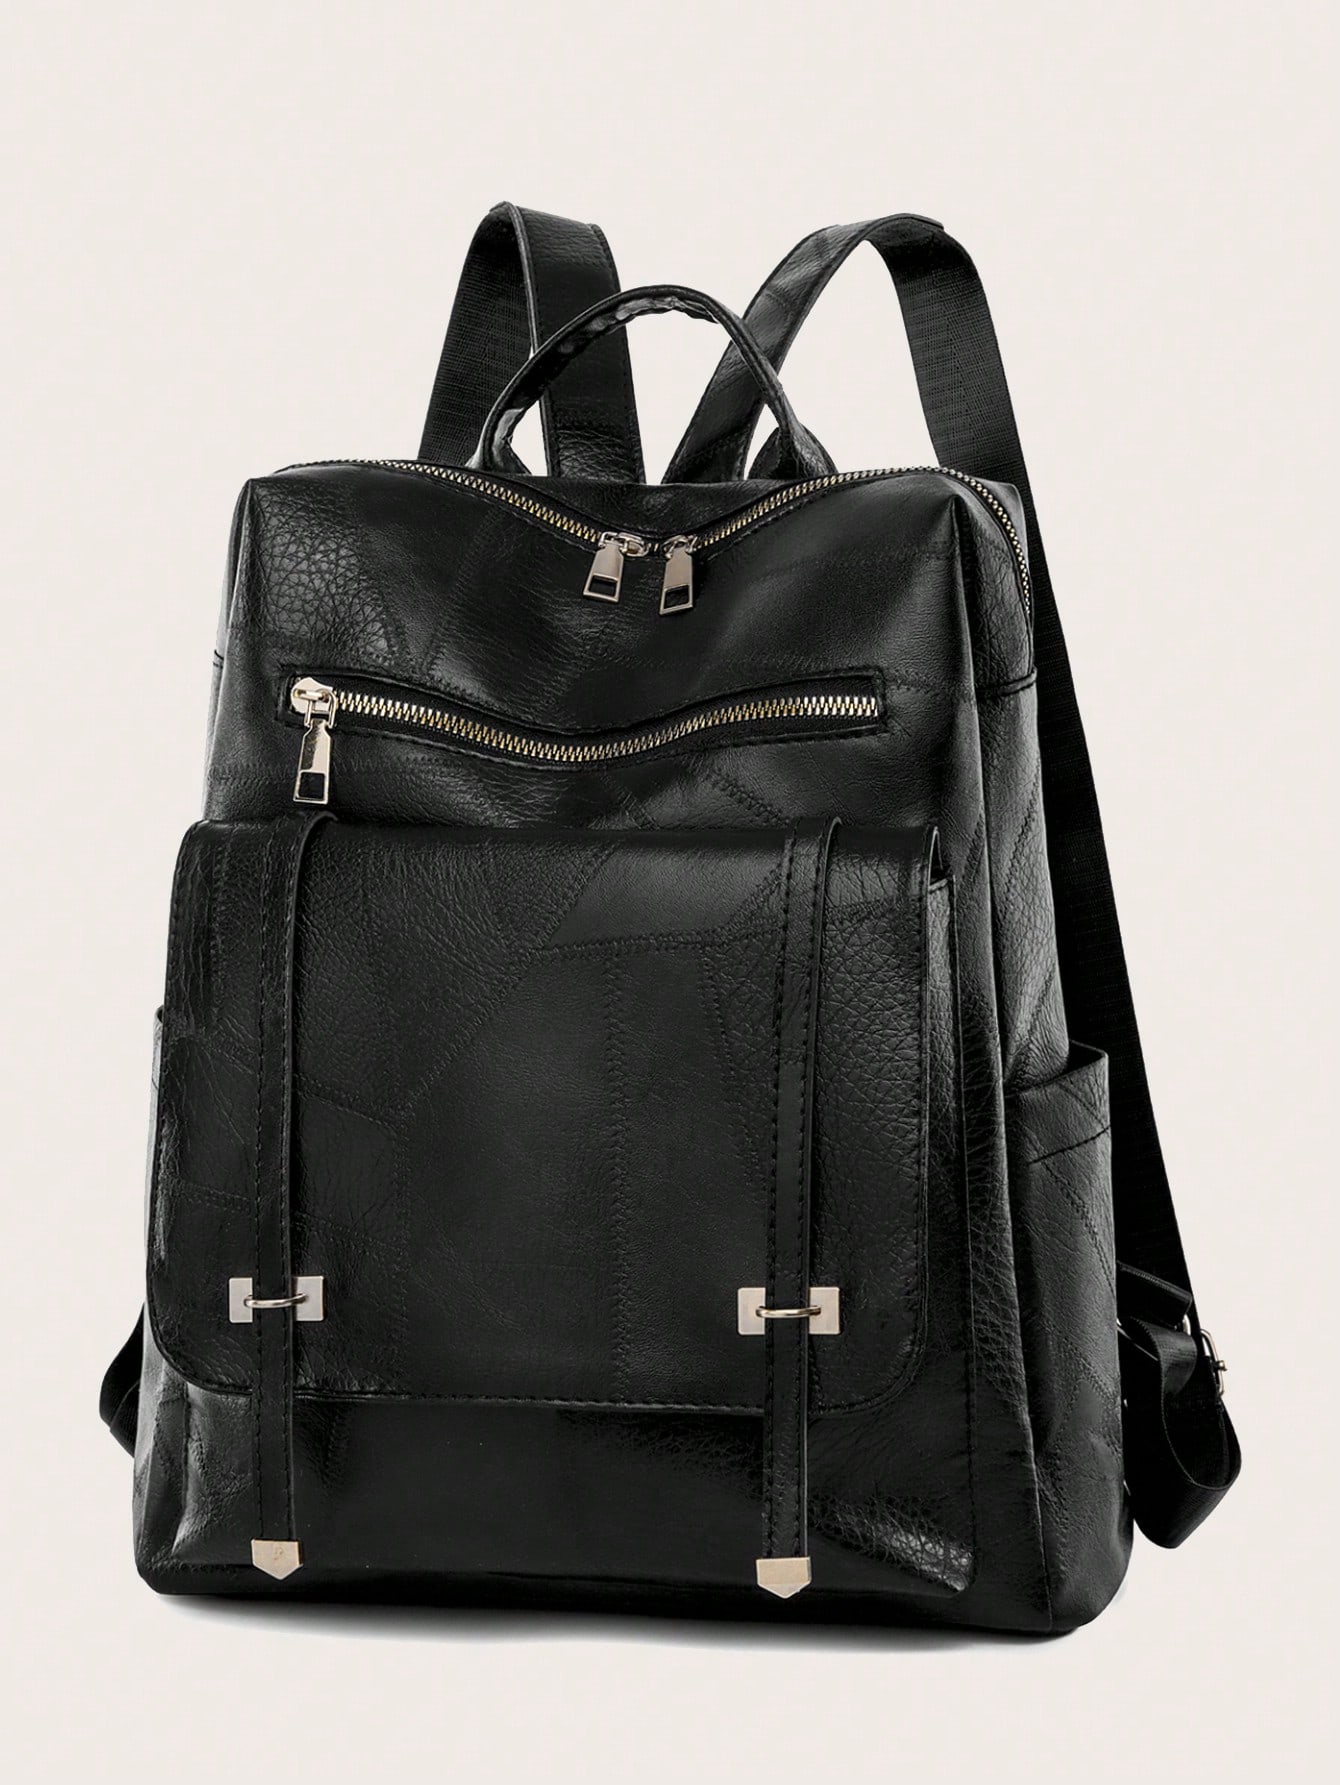 974 reunionby tkmdesign 17 дюймовый рюкзак на плечо винтажный спортивный активный графический прочный плотный рюкзак Винтажный однотонный кампусный рюкзак двойного назначения на одно плечо для мужчин и женщин, черный